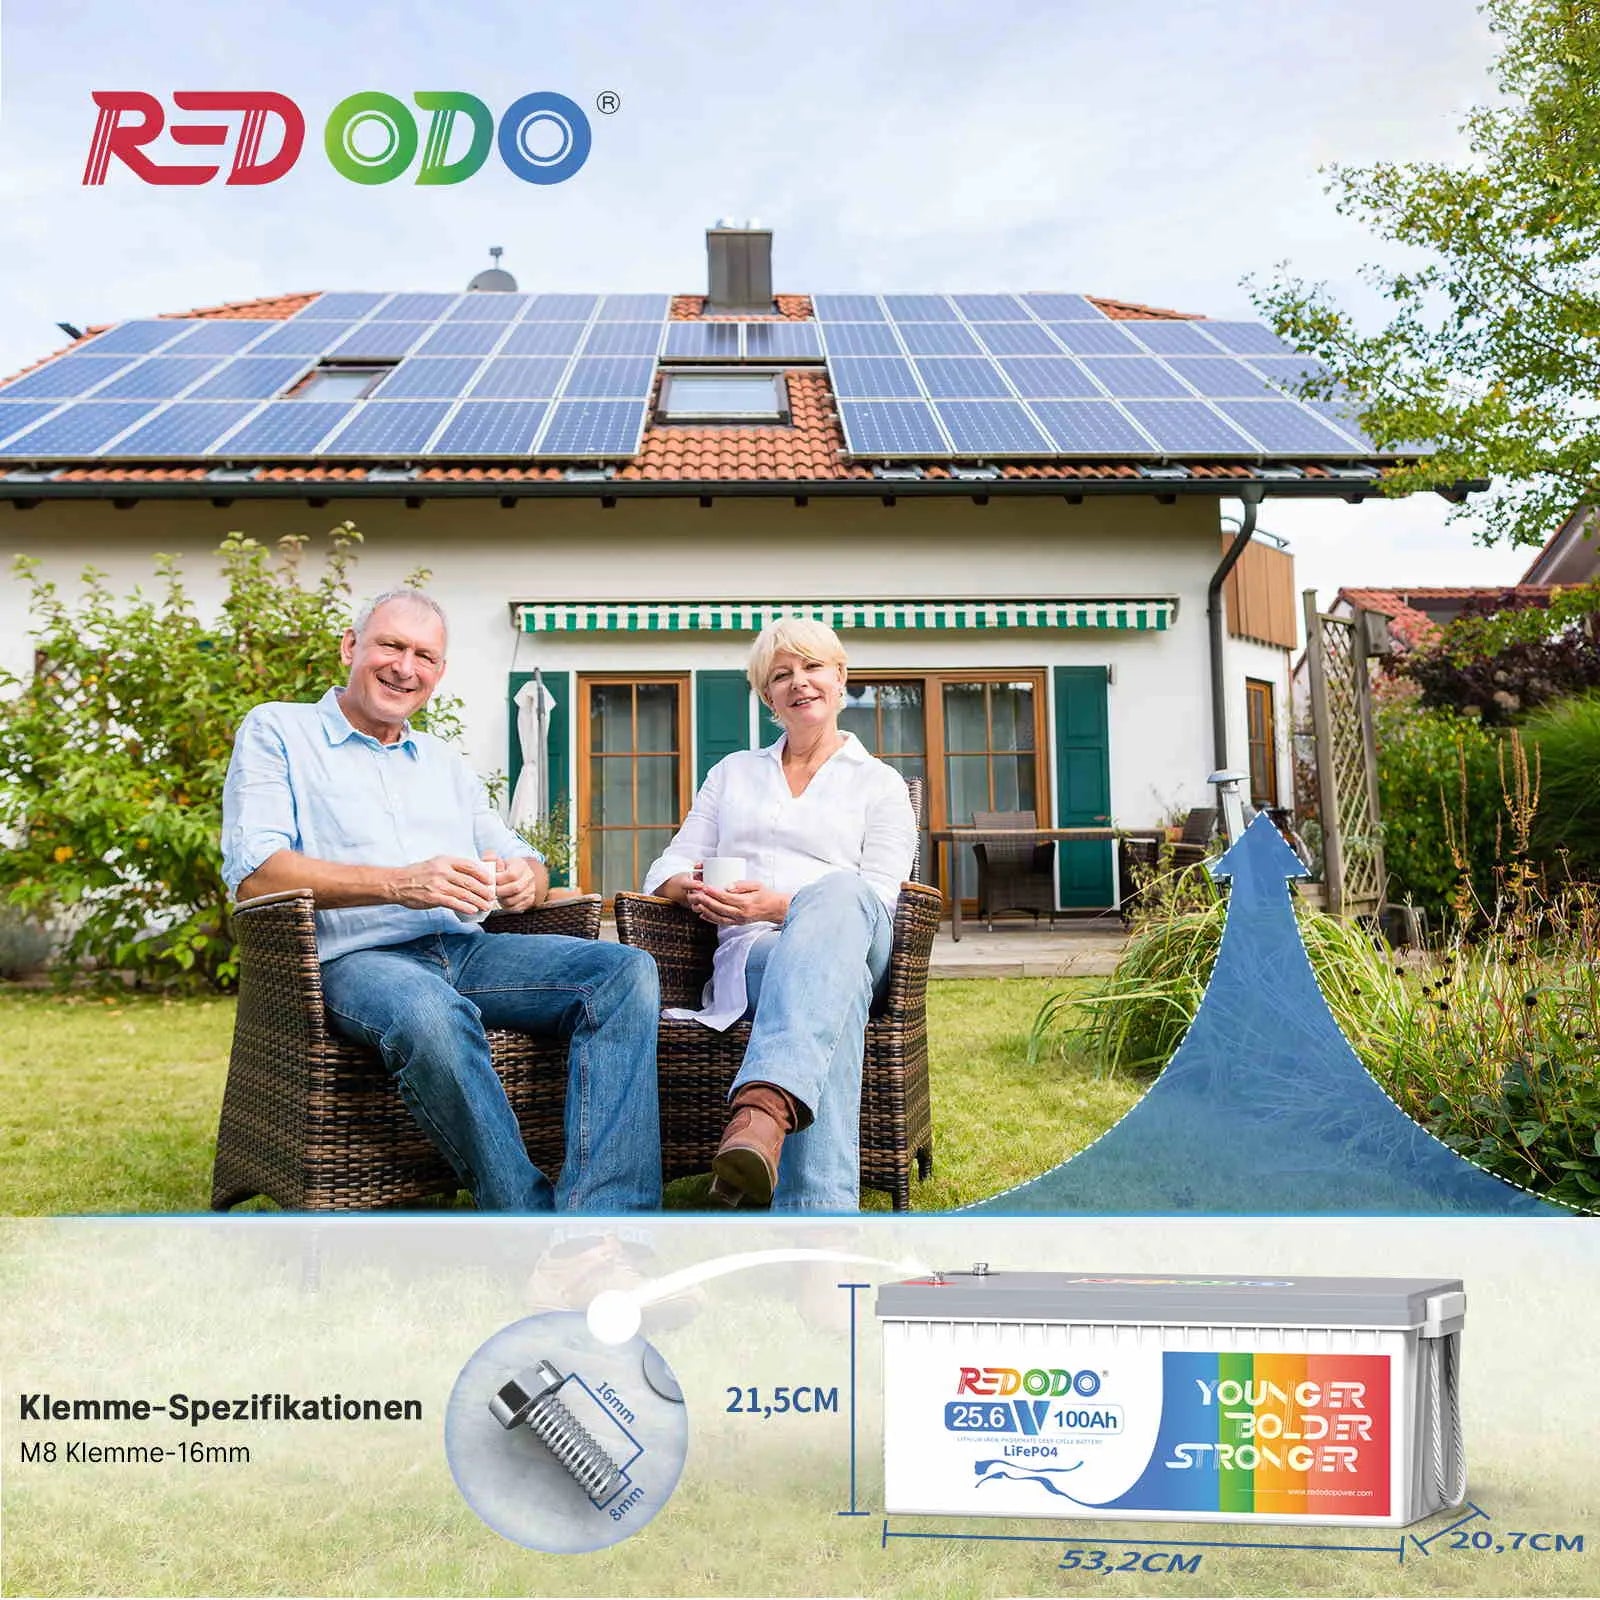 ✅Wie Neu✅Befreiung von 19% MwSt - Redodo 24V 100Ah Deep Cycle LiFePO4 Batterie - nur für Wohngebäude und Deutschland redodopower-de-free